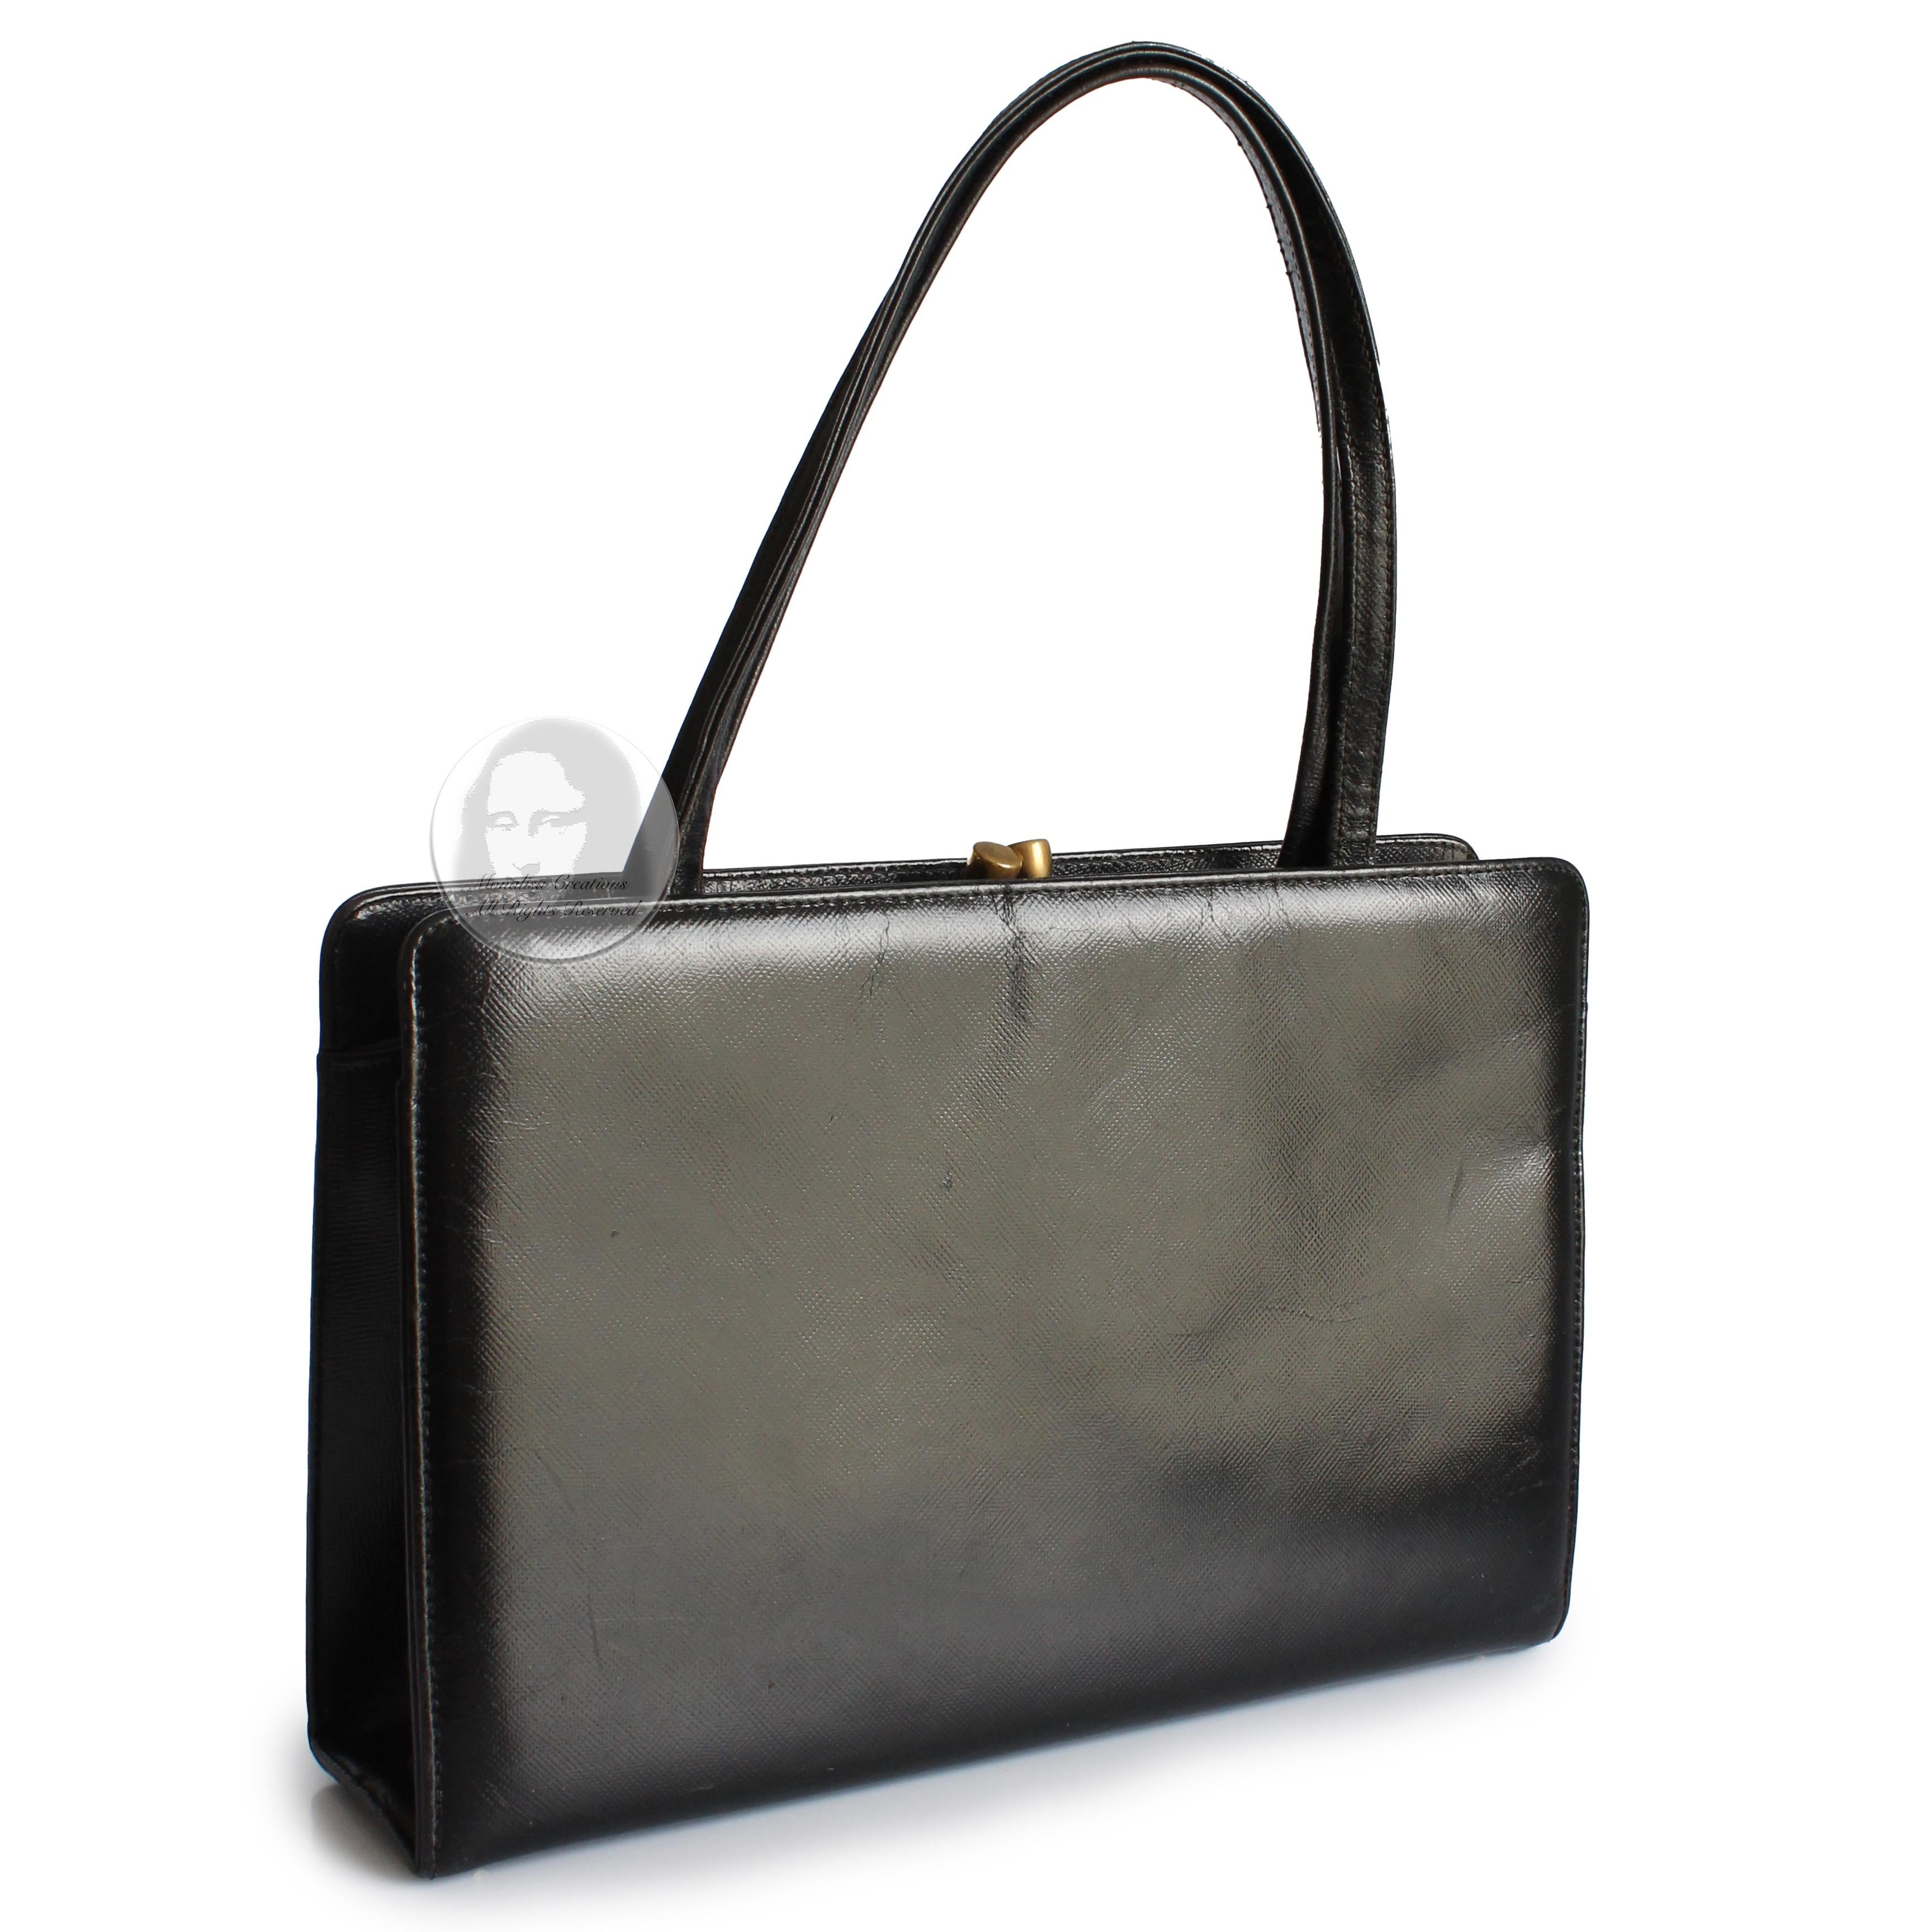 Bienen-Davis Evening Bag Black Saffiano Textured Leather Rare Vintage 1970s For Sale 1